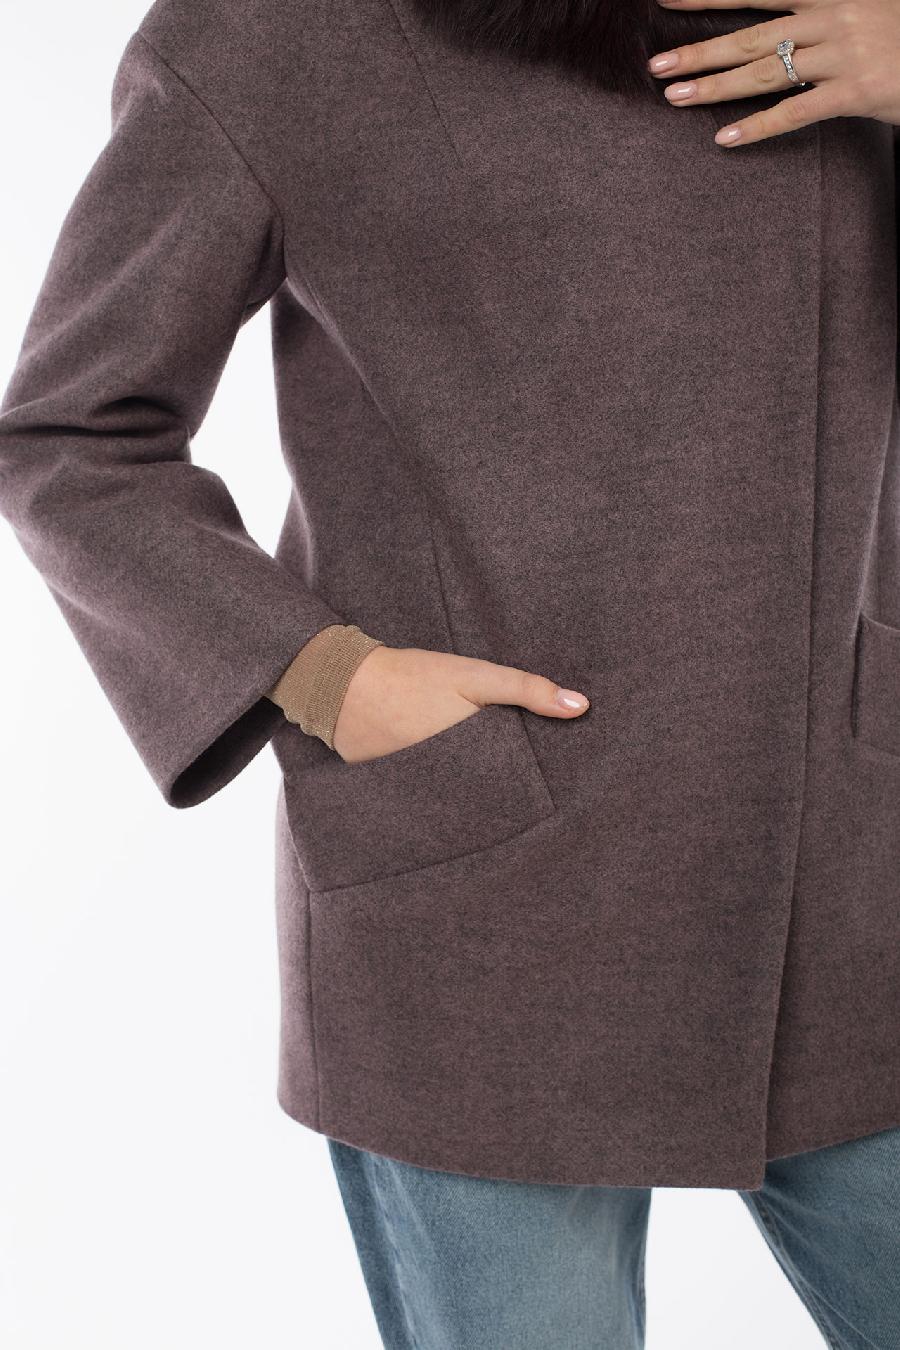 02-3099 Пальто женское утепленное валяная шерсть темно-сиреневый